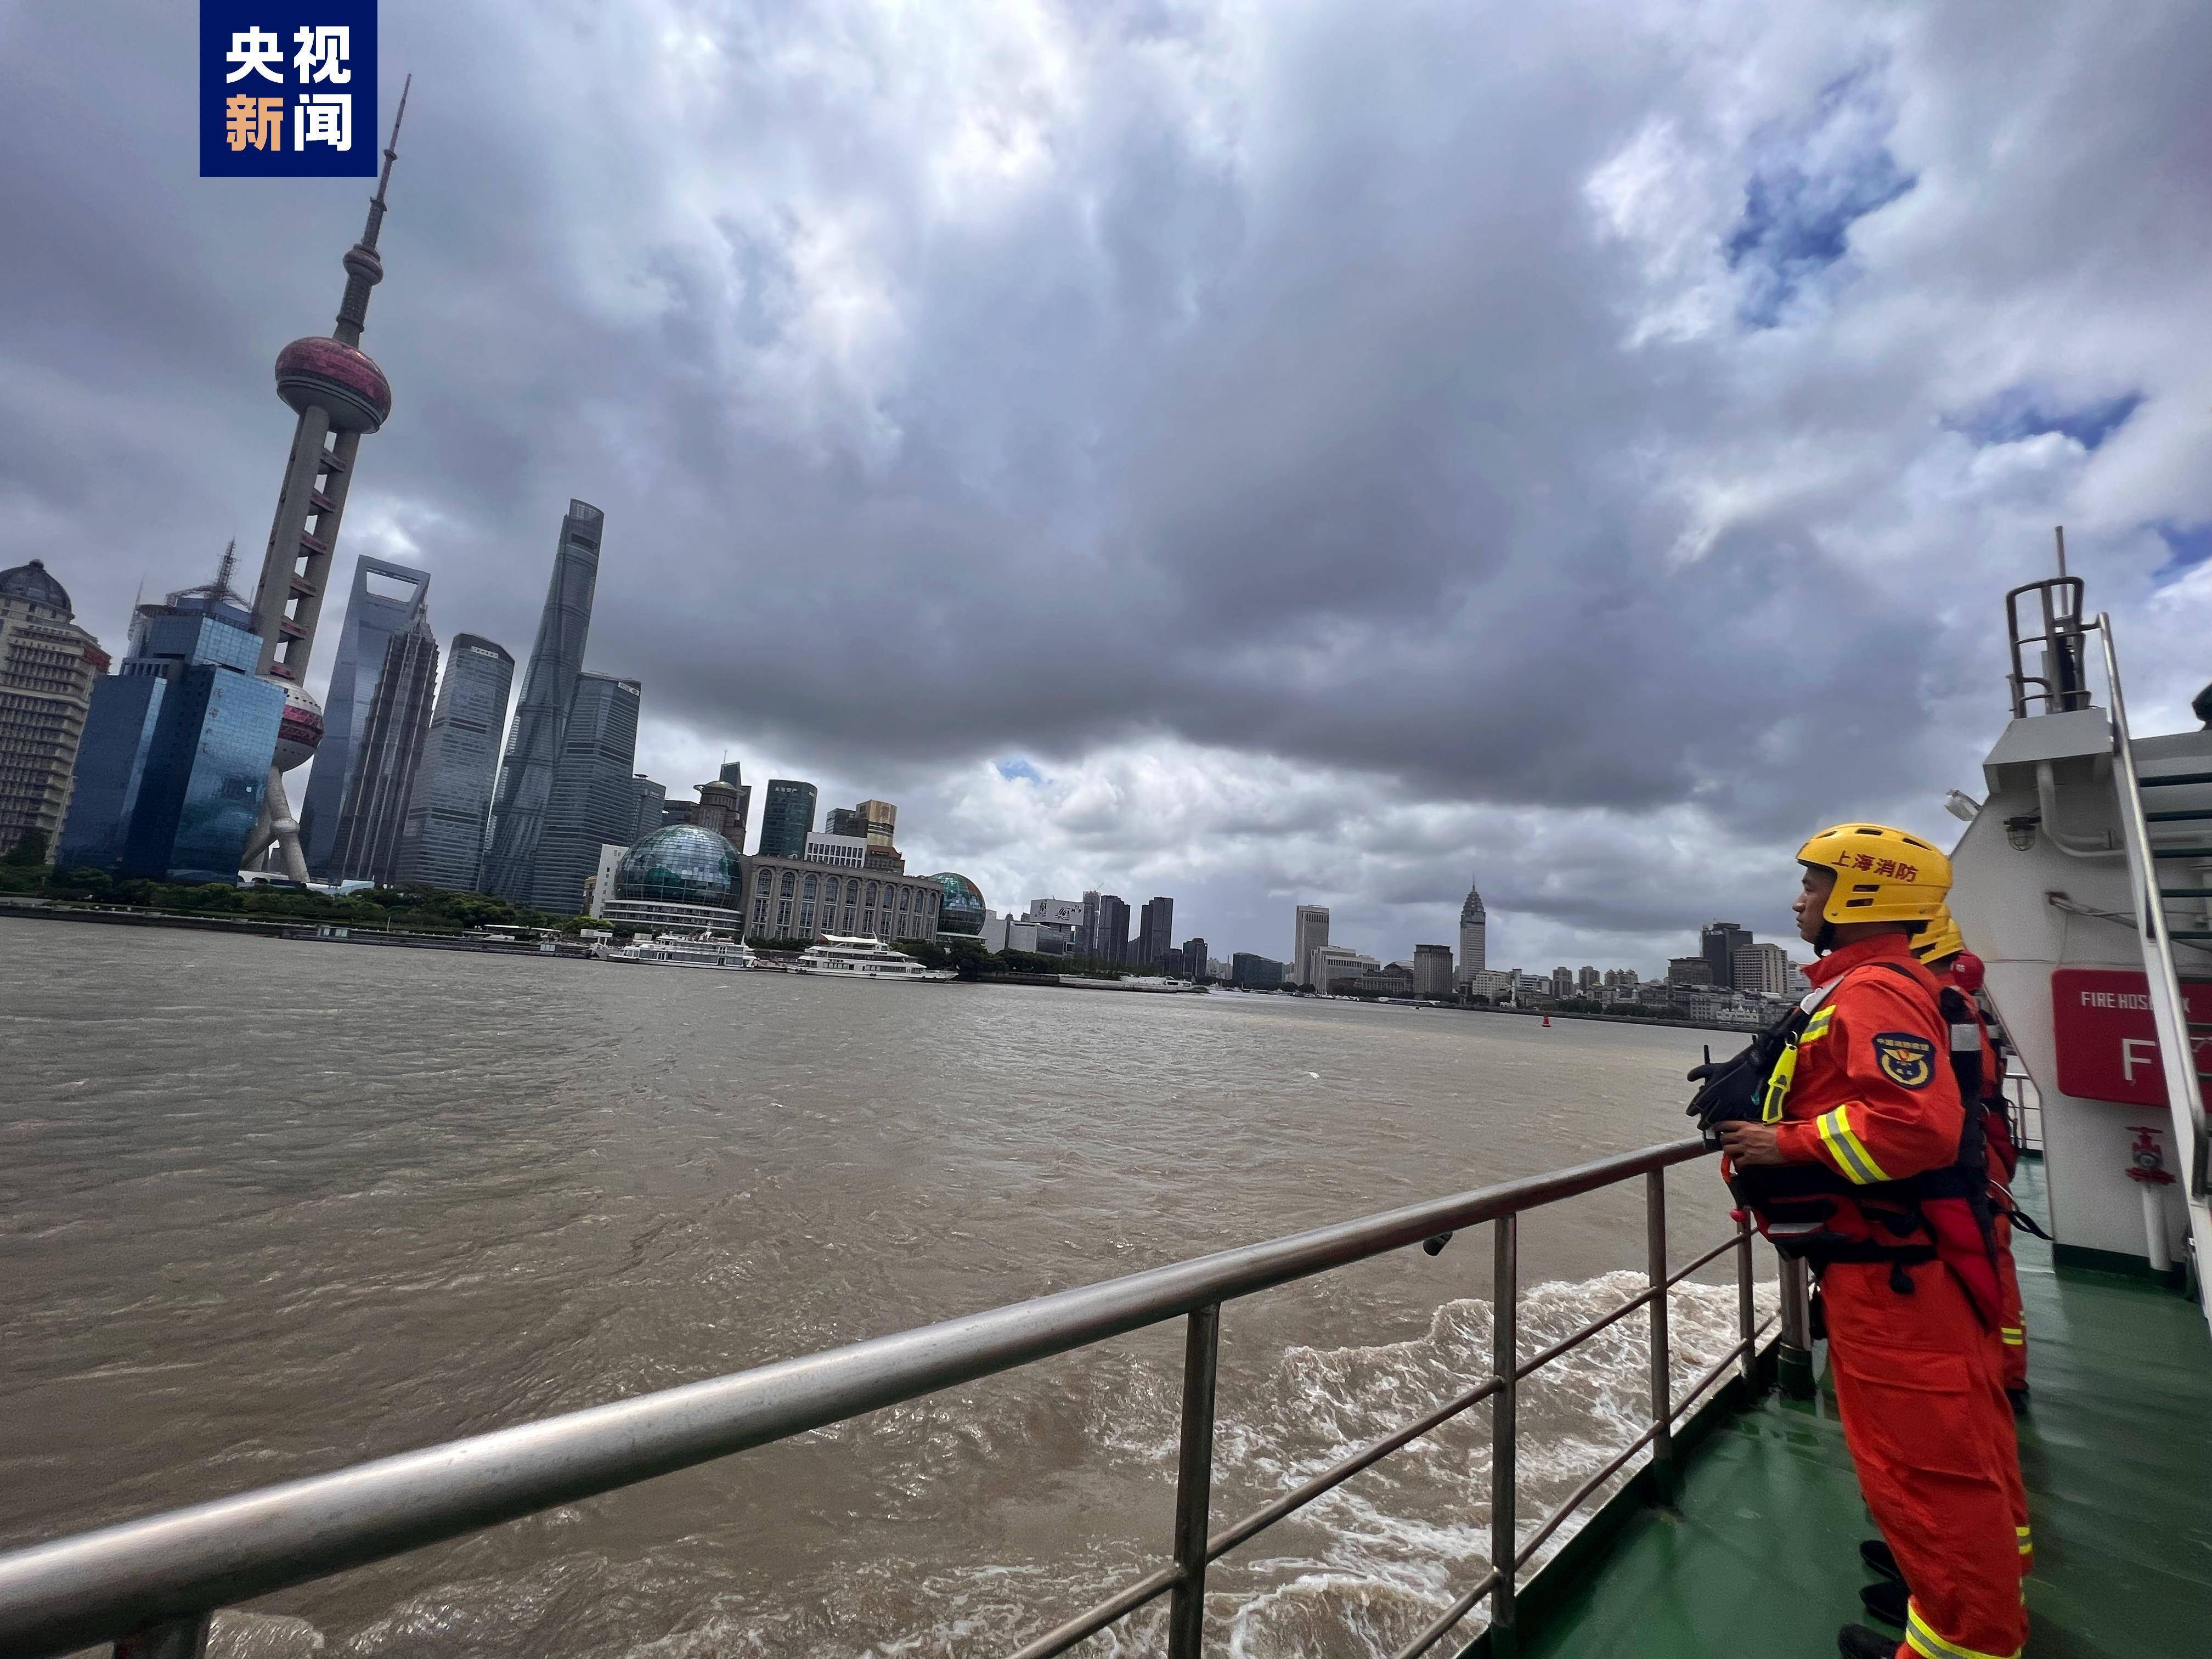 台风“轩岚诺”来袭 上海部分公园、景区临时关闭 消防部门24小时备勤